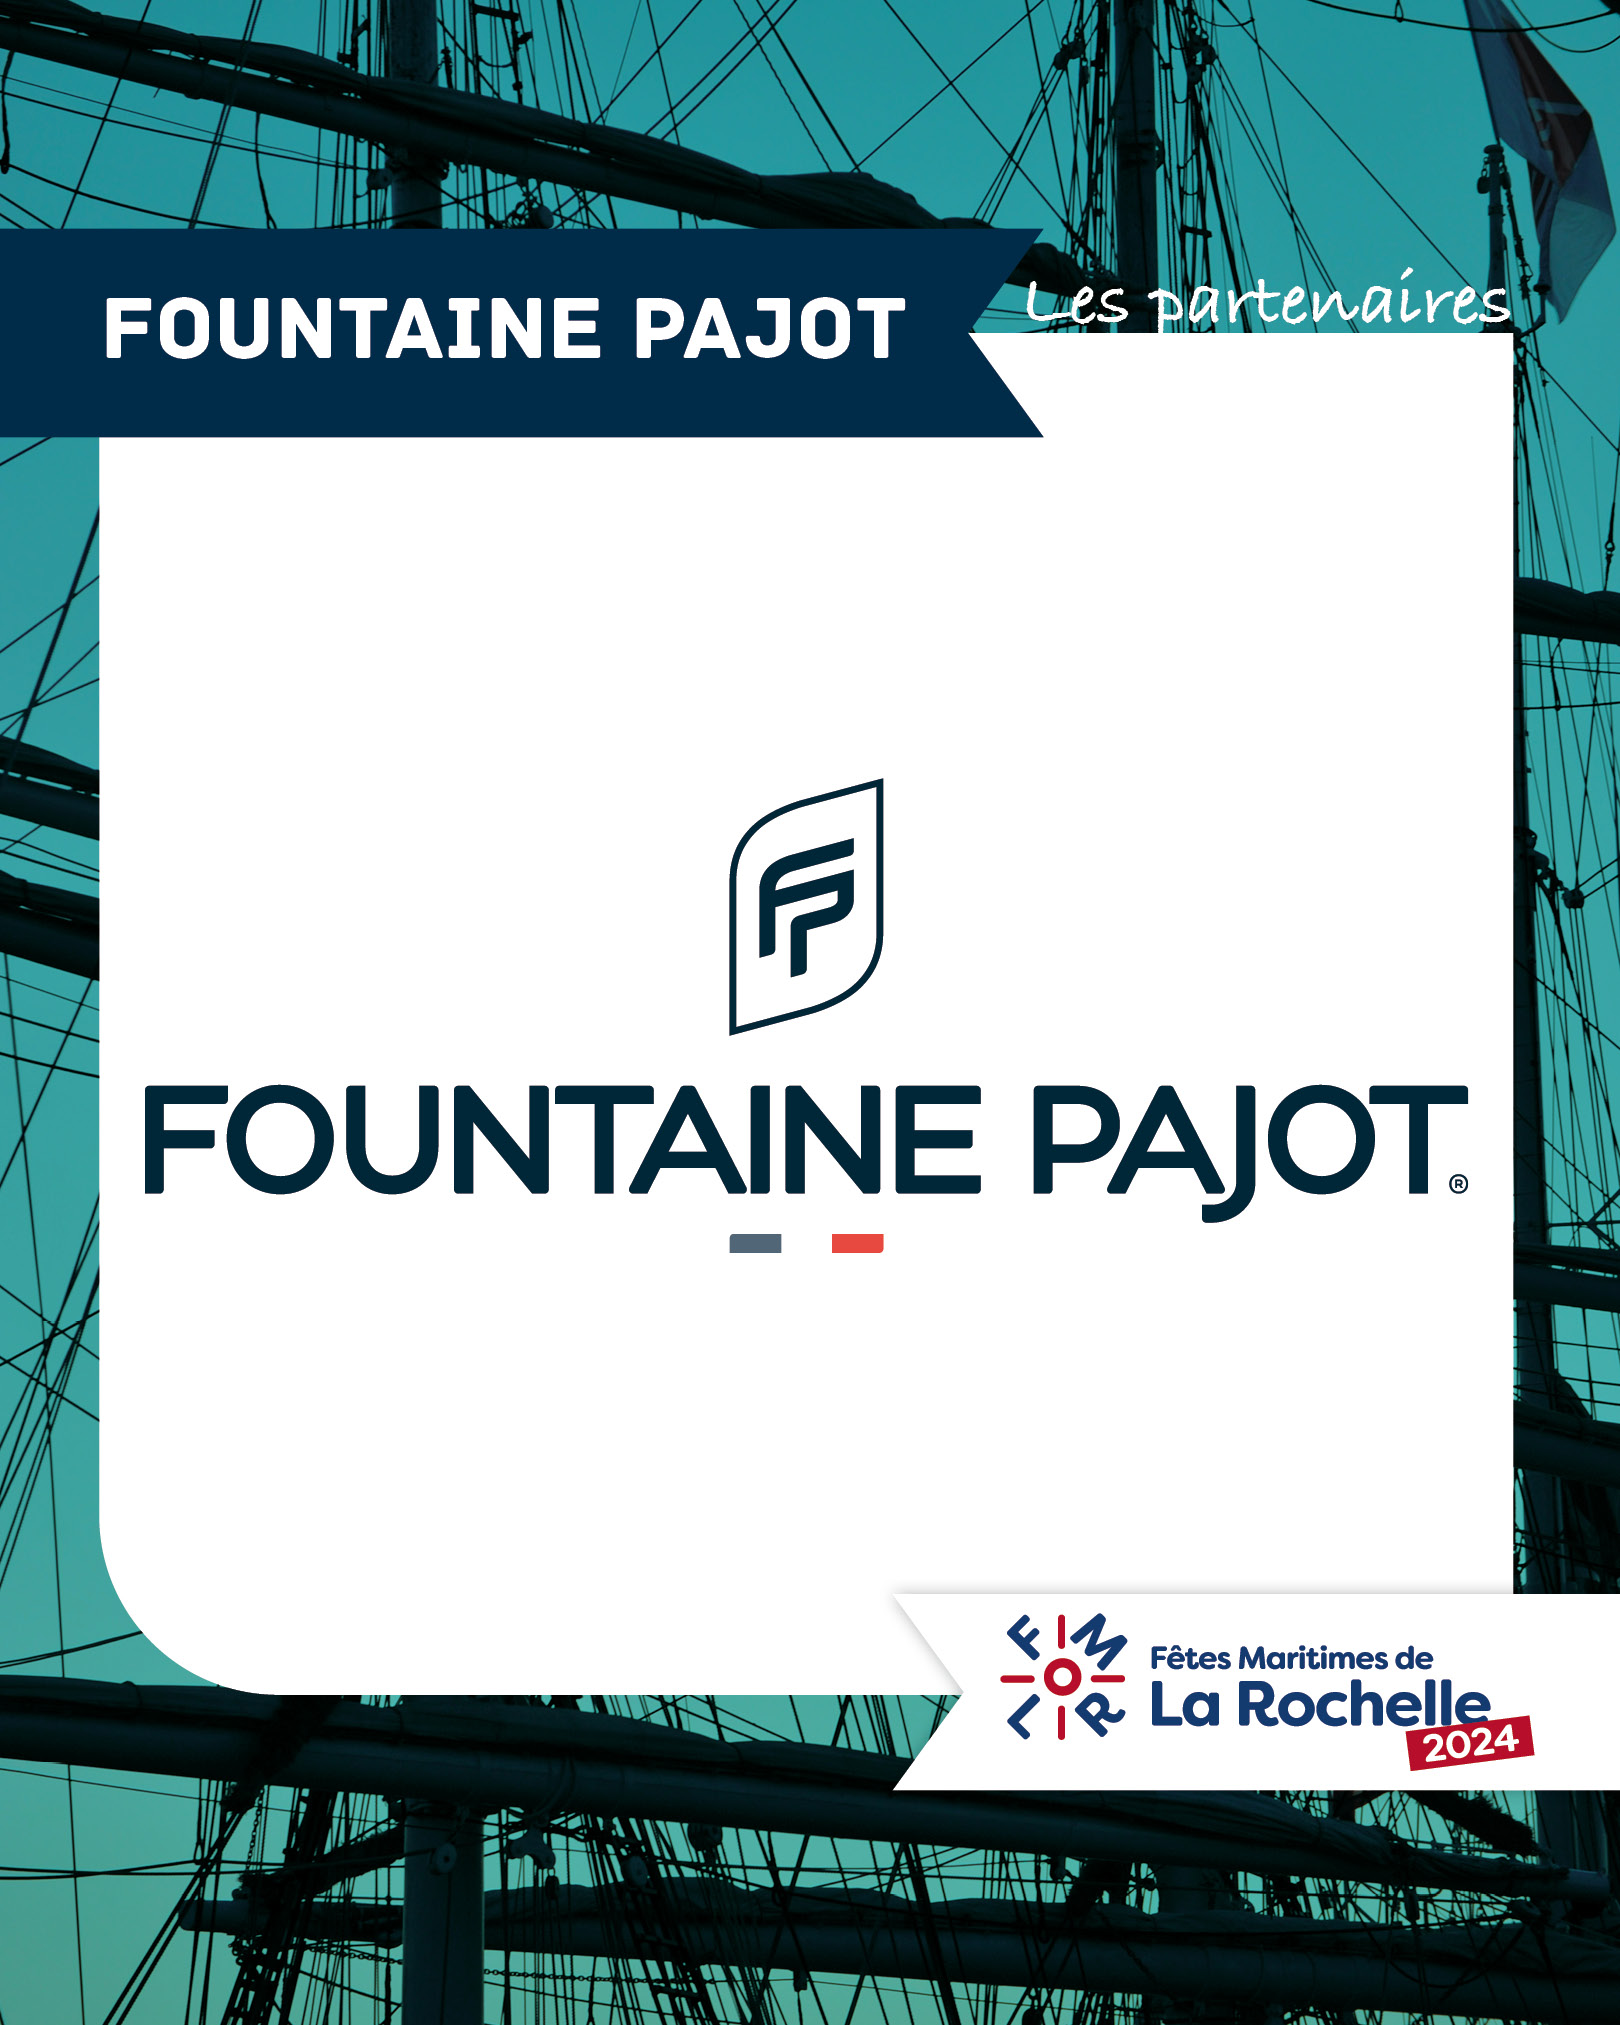 Fountaine Pajot, partenaire des Fêtes Maritimes de La Rochelle 2024